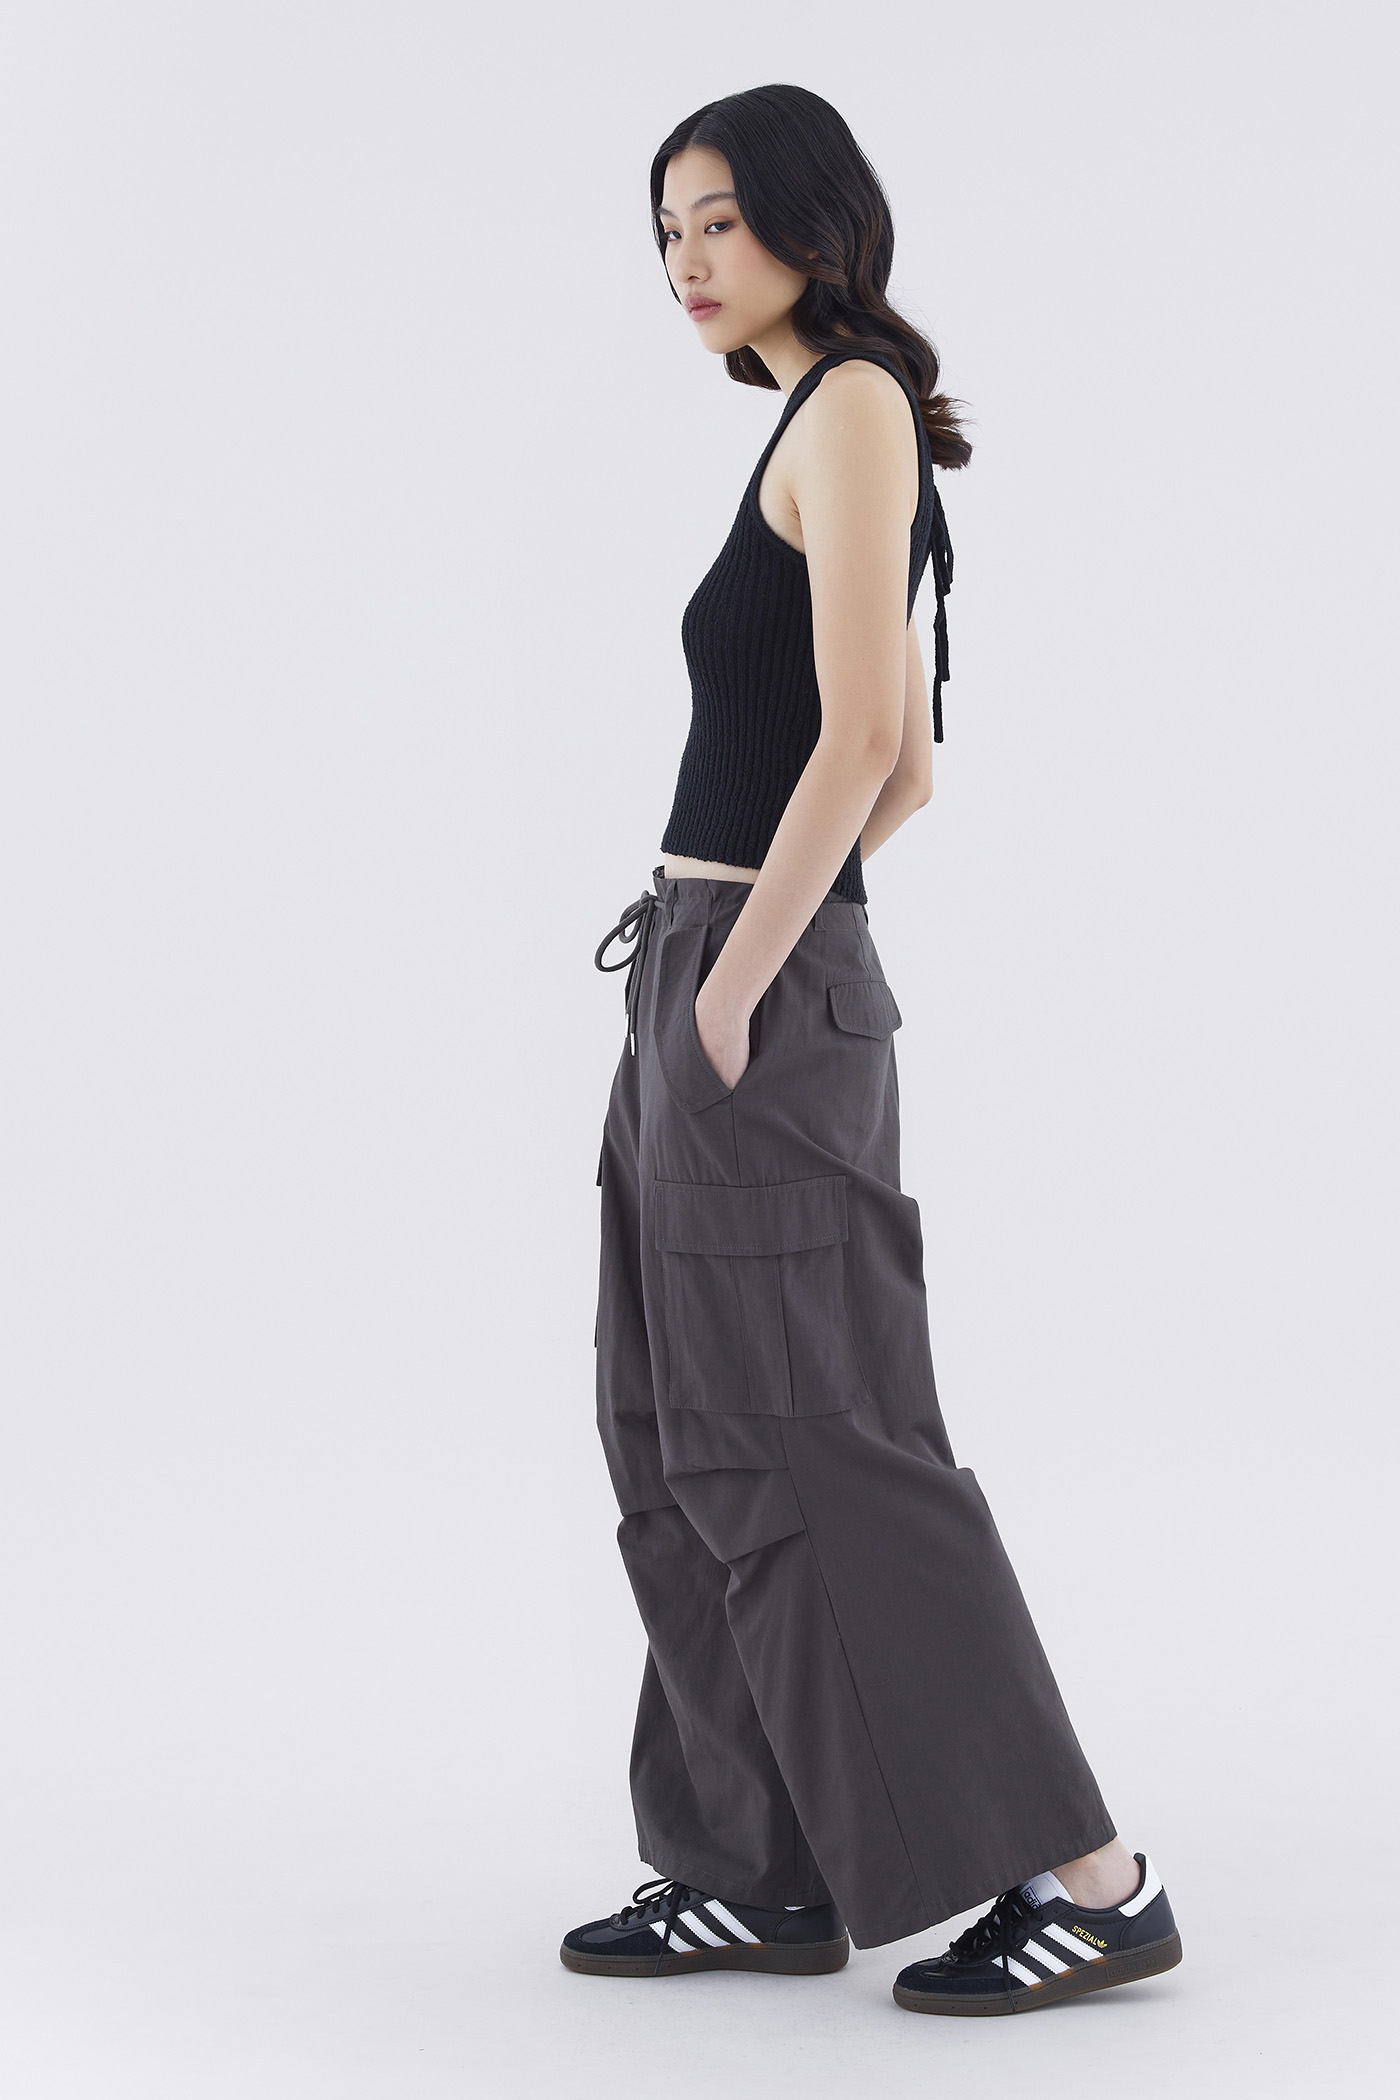 Eddie Bauer Women's Guide Pro Pants, Slate Green, 14 price in UAE,   UAE